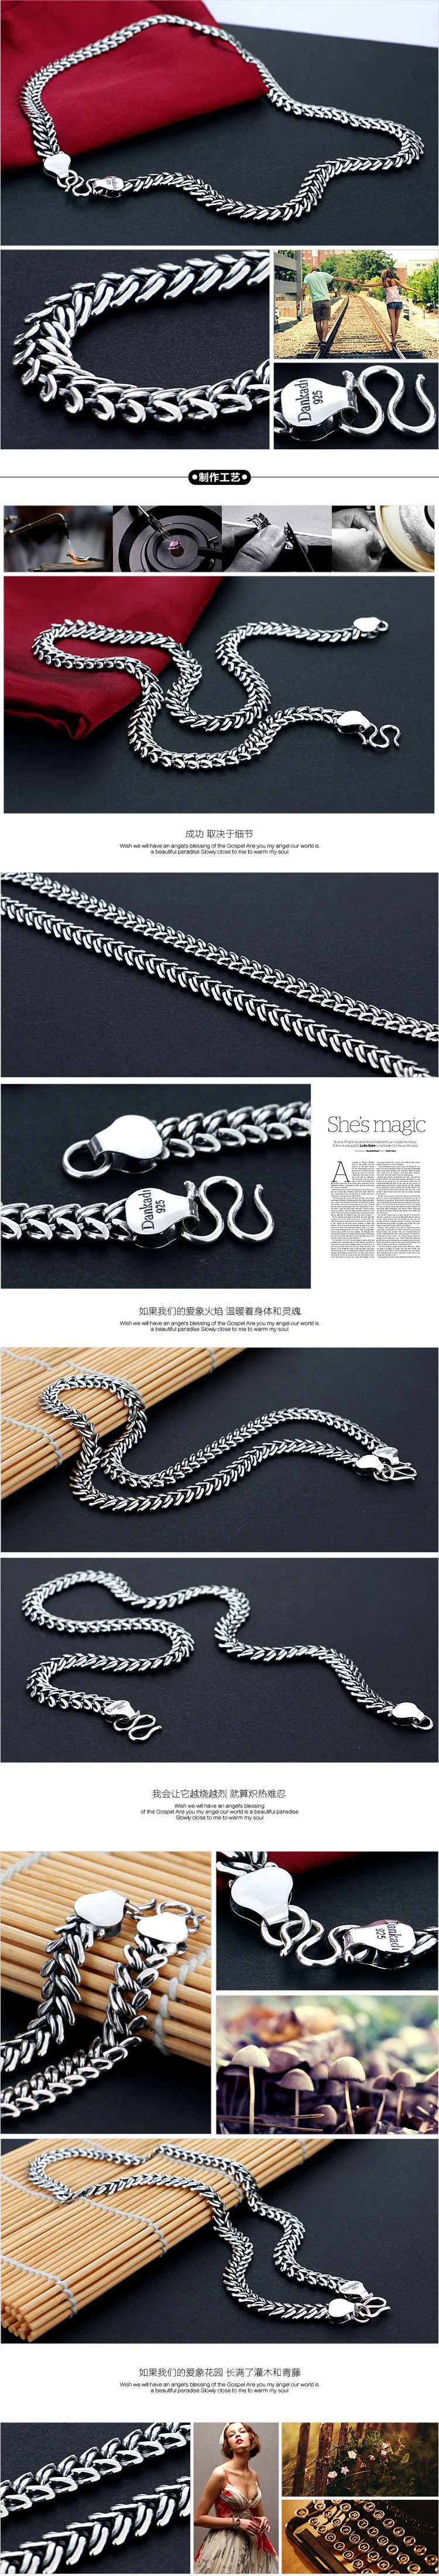 Ретро ветер 925 тайское серебряное ожерелье мужской ремень пряжка дизайн цельное серебряное ожерелье 10 мм 66см Размер мужские ювелирные изделия подарок на день рождения